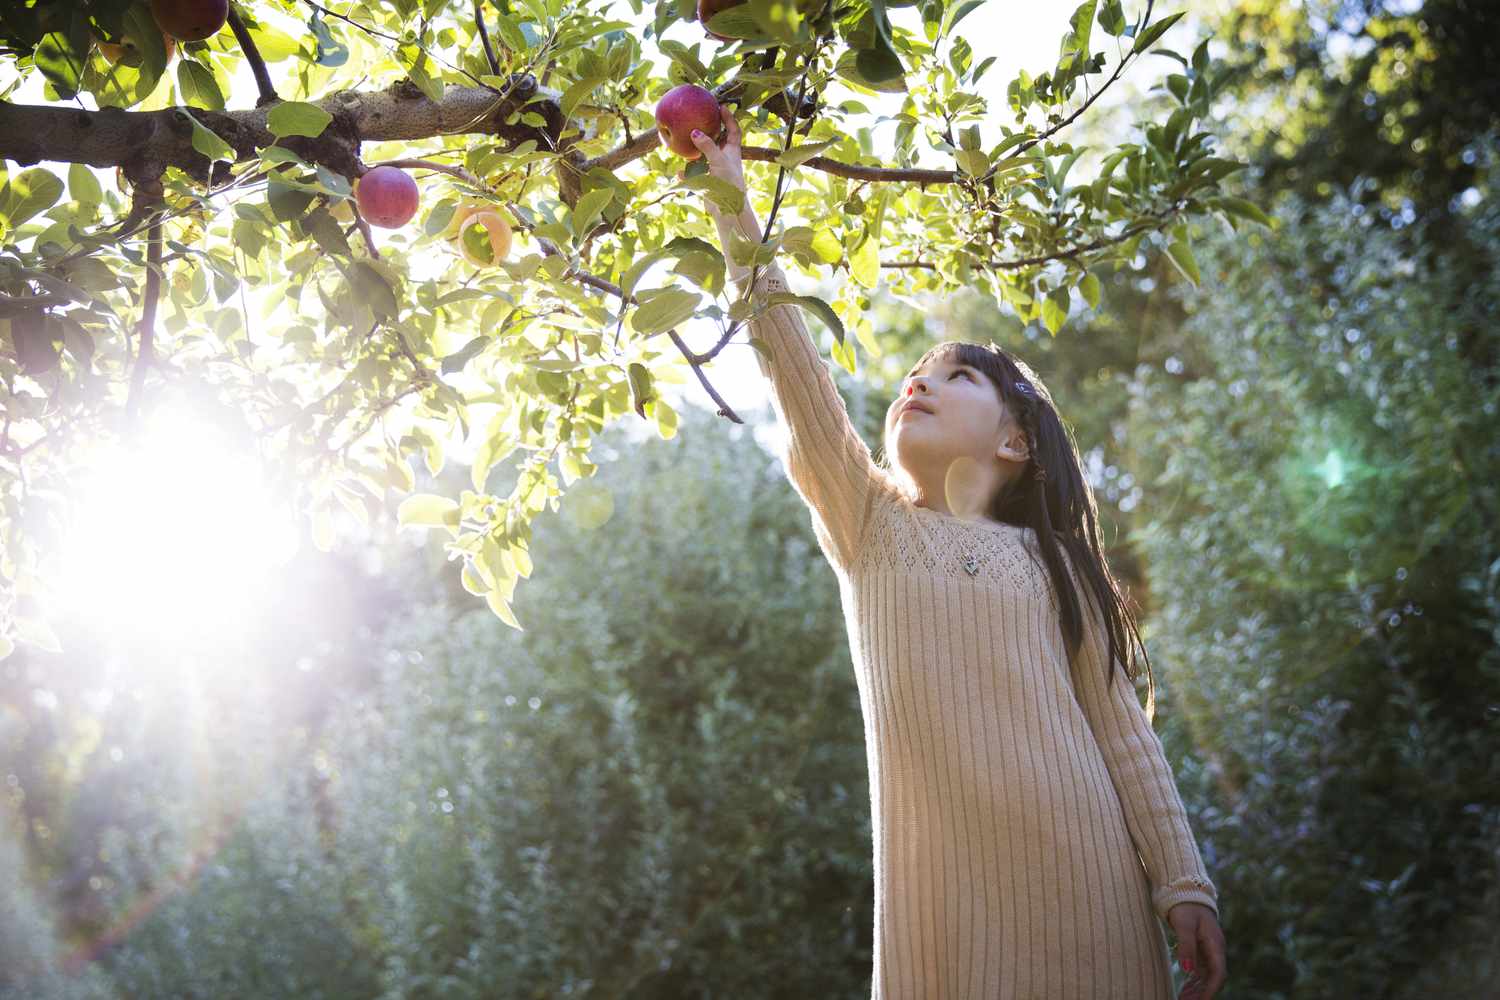 女孩在果园采摘苹果时收获